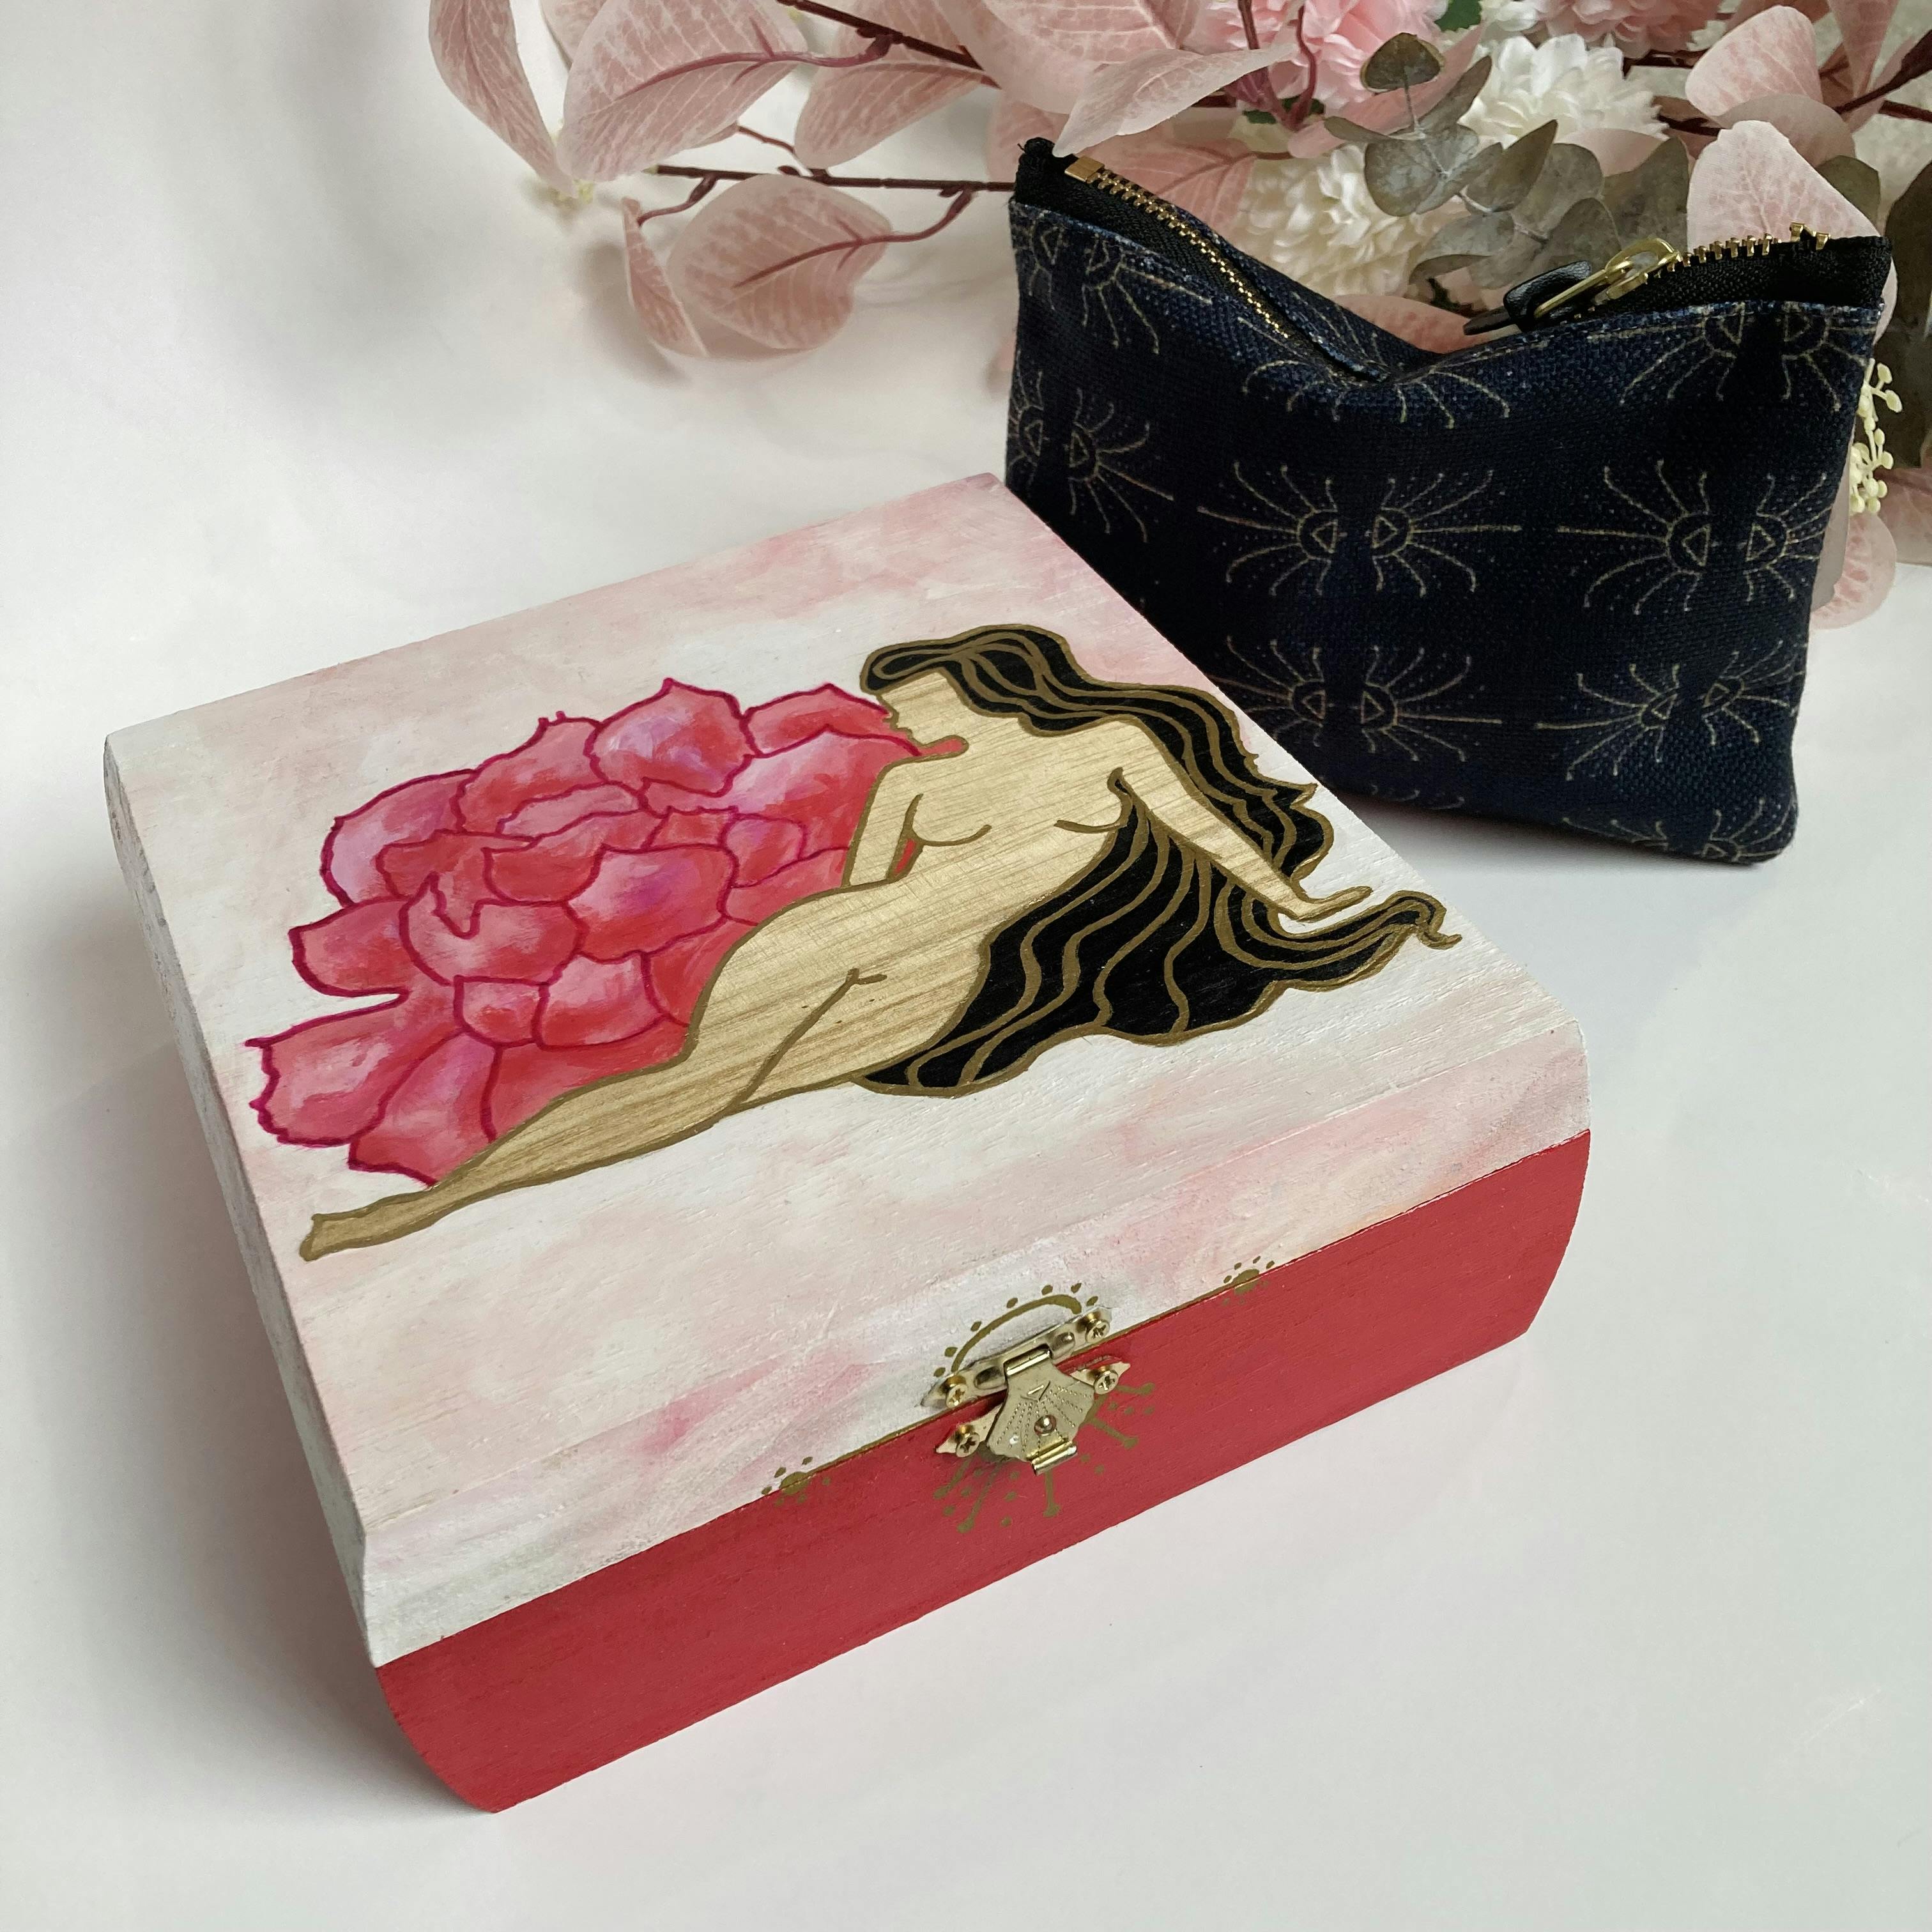 Rose Woman Jewelry Box 